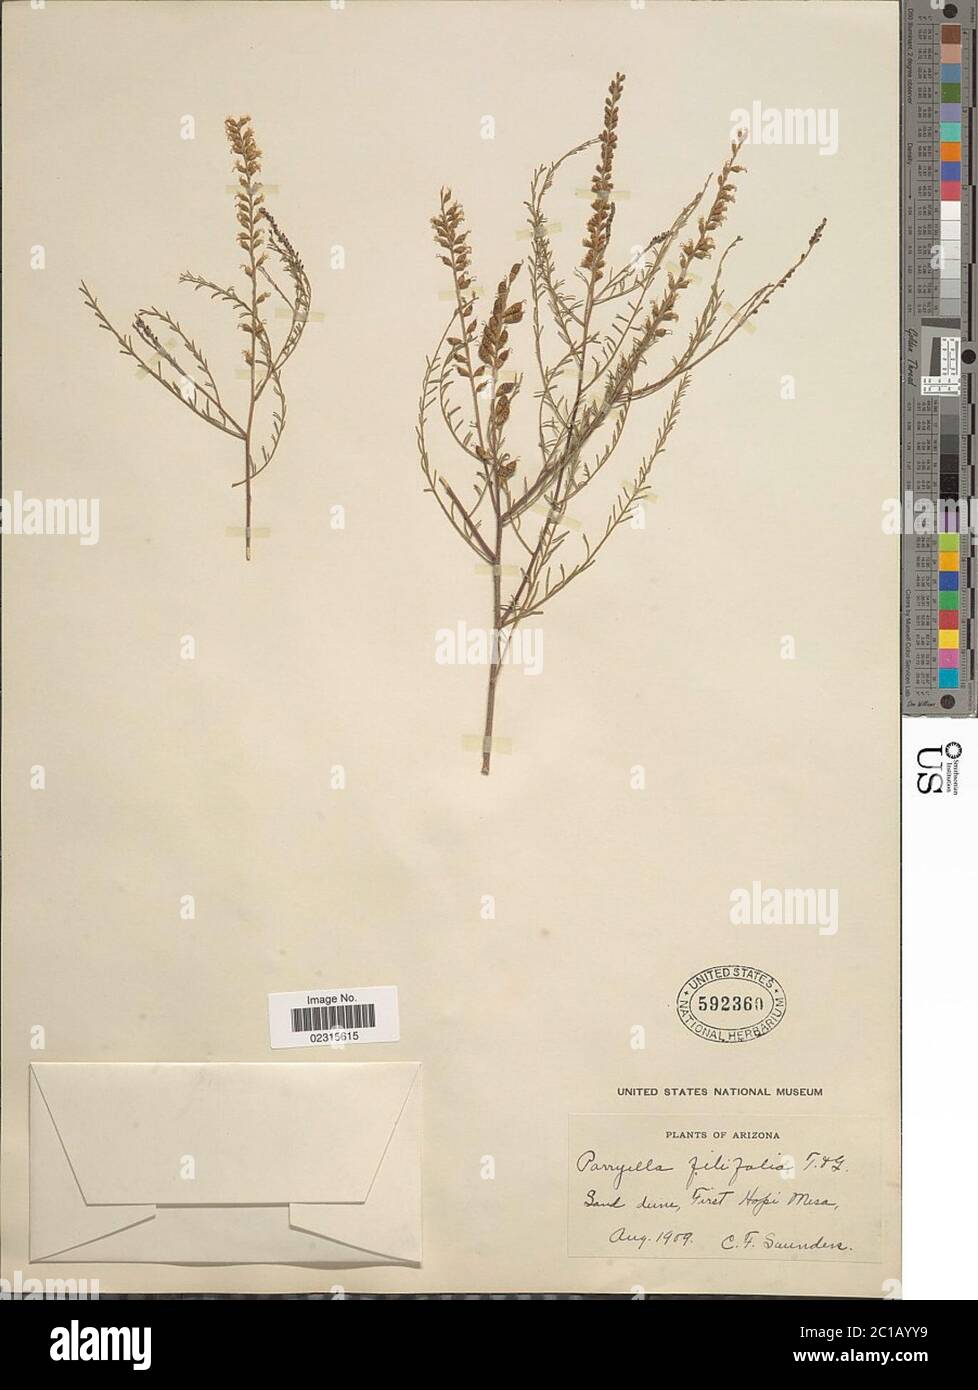 Parryella filifolia Torr A Gray ex A Gray Parryella filifolia Torr A Gray ex A Gray. Stock Photo